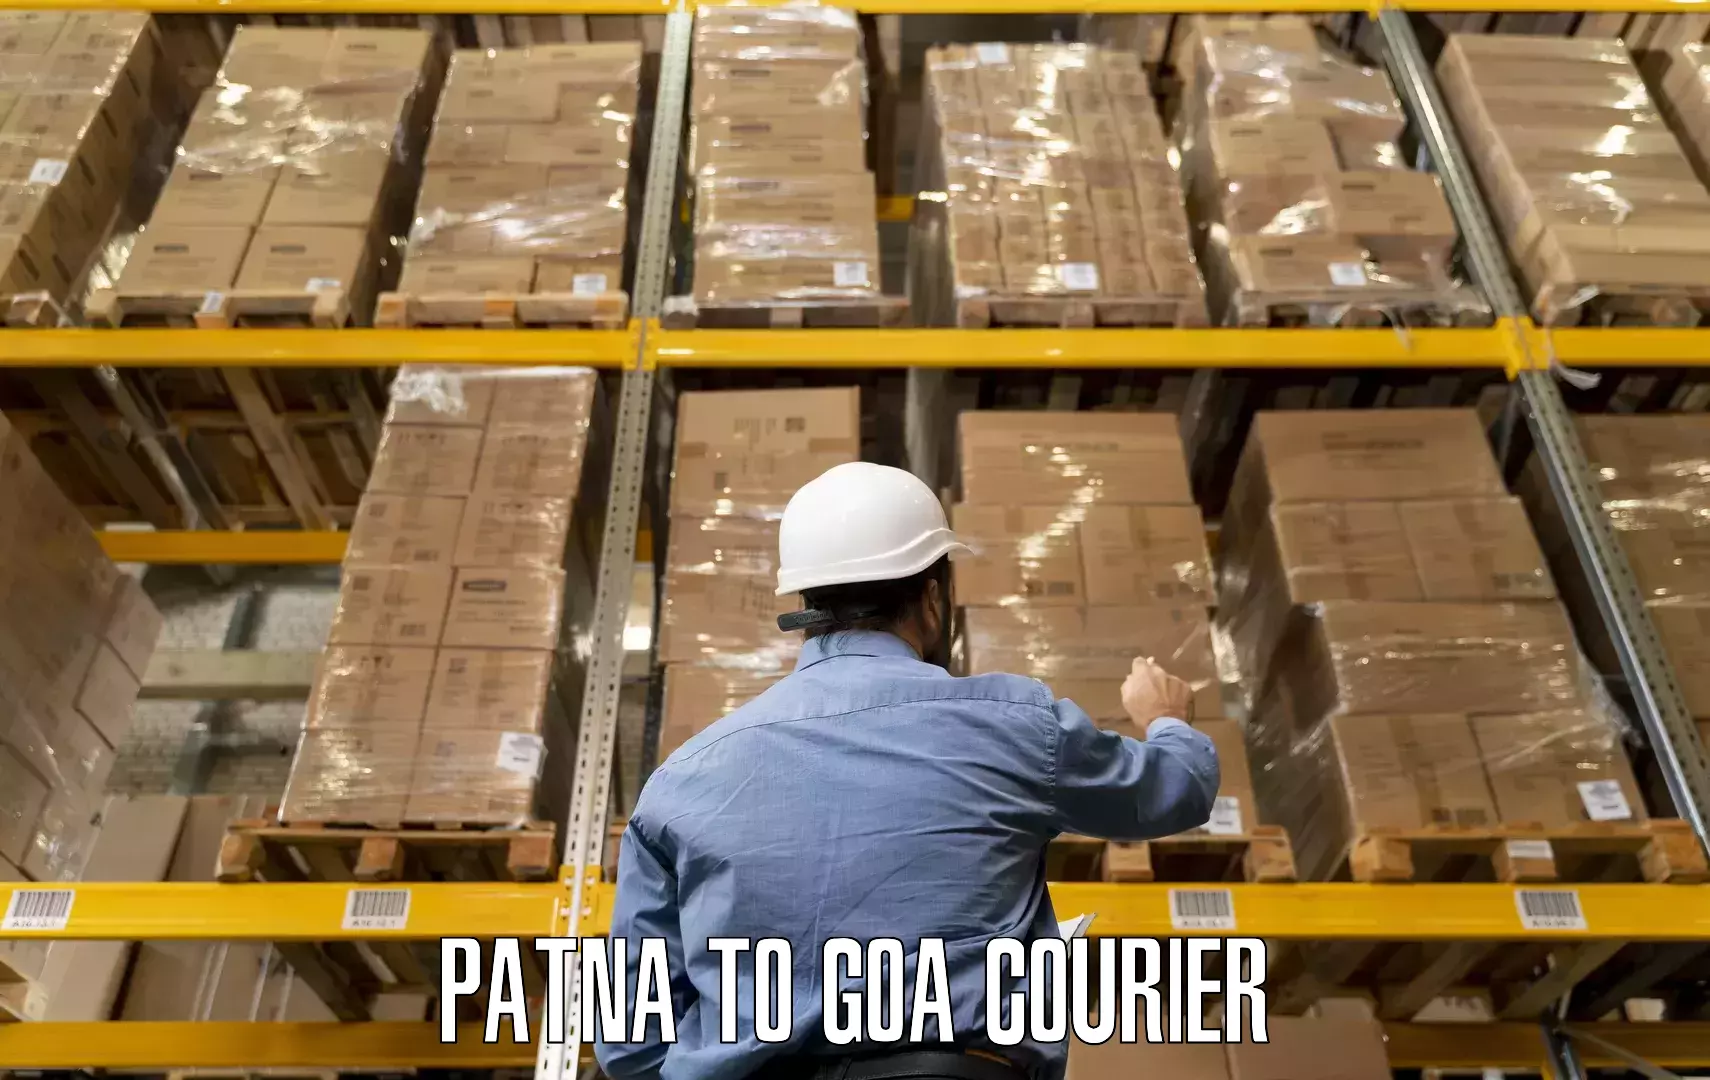 Quality relocation services Patna to Vasco da Gama